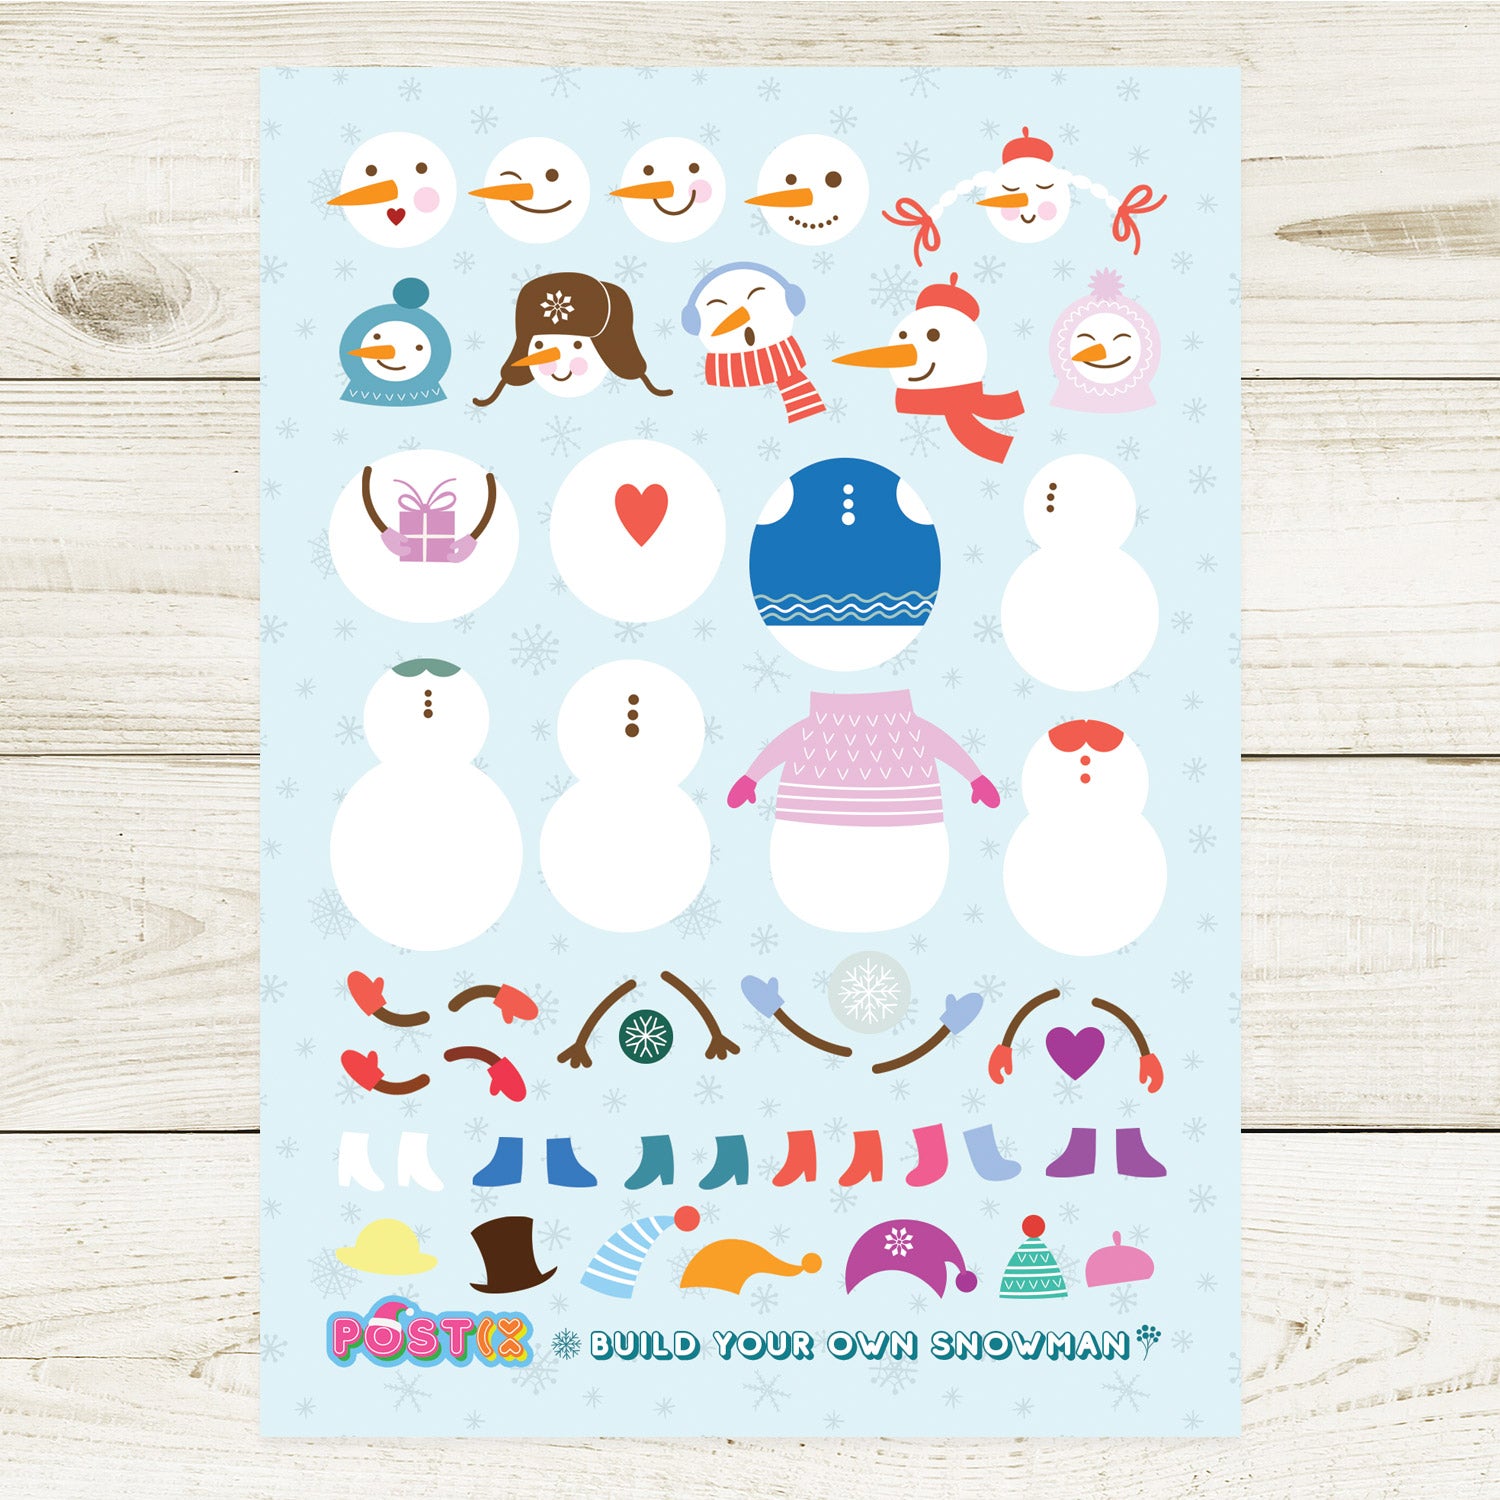 Build Your Own Snowman A6 Sticker Sheet